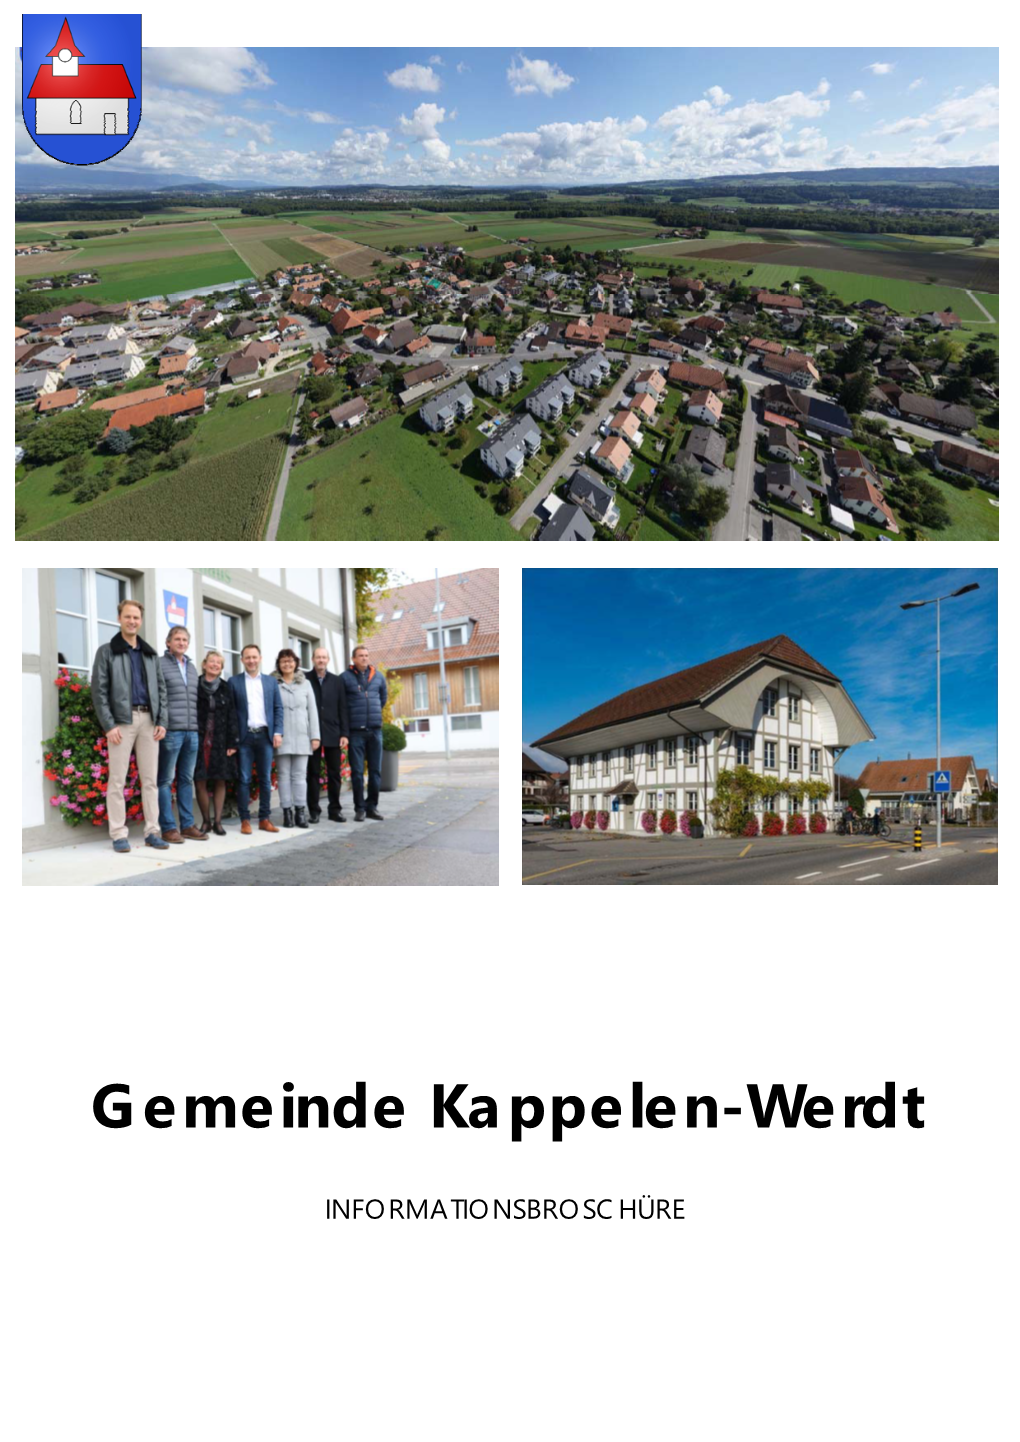 Gemeinde Kappelen-Werdt